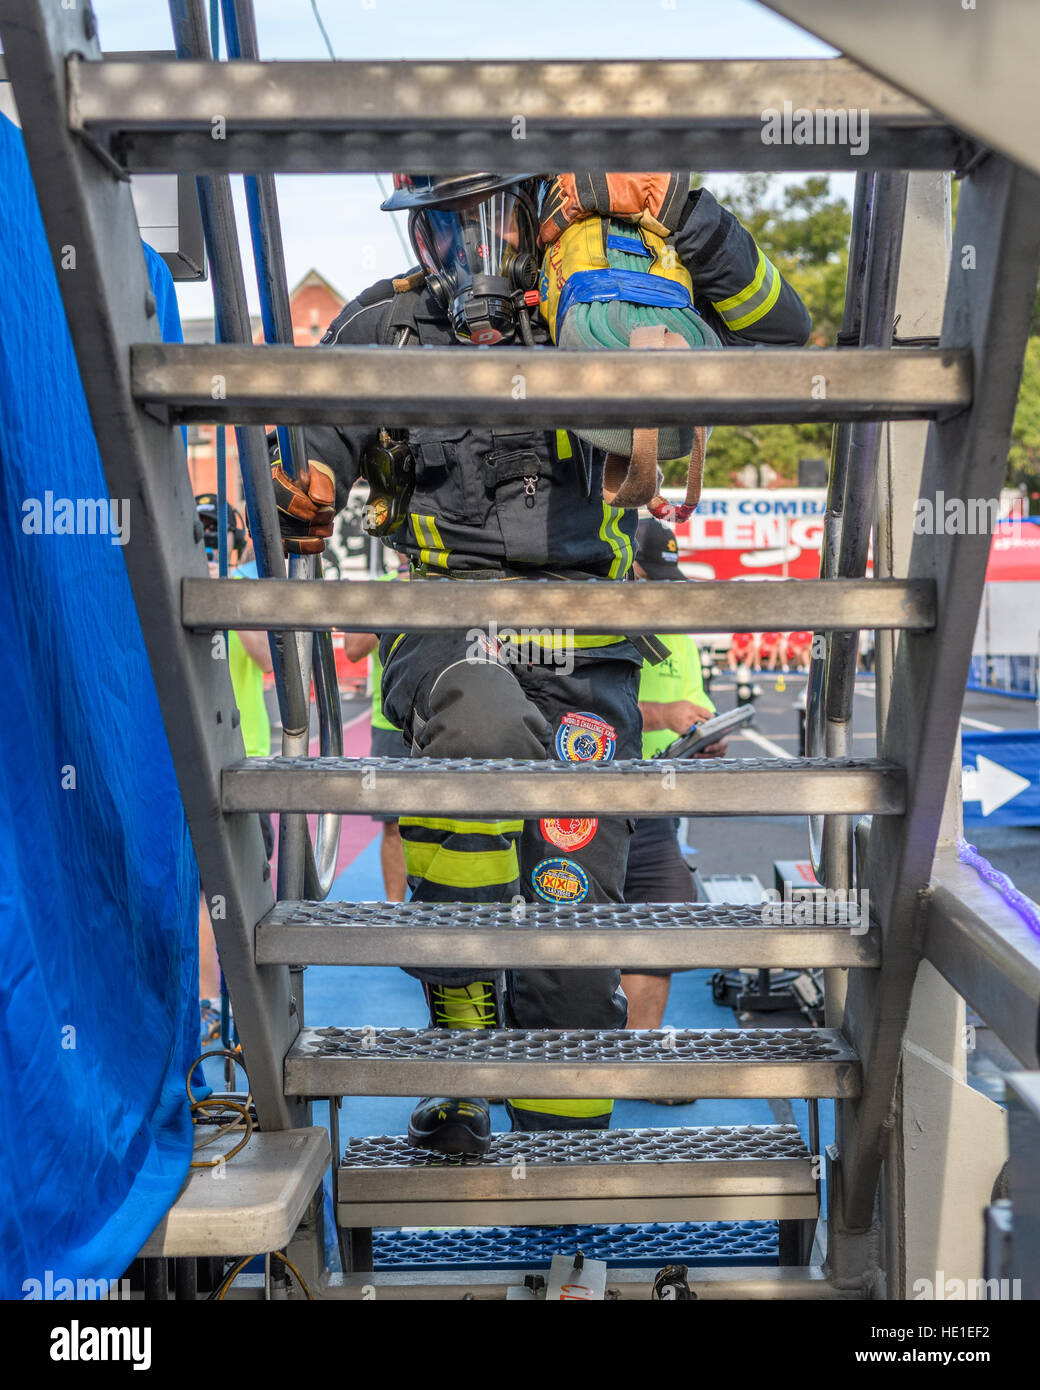 Ein Feuerwehrmann beginnt die Treppe hinauf auf einem 4-stöckigen Turm mit gebündelten Schlauch. Stockfoto